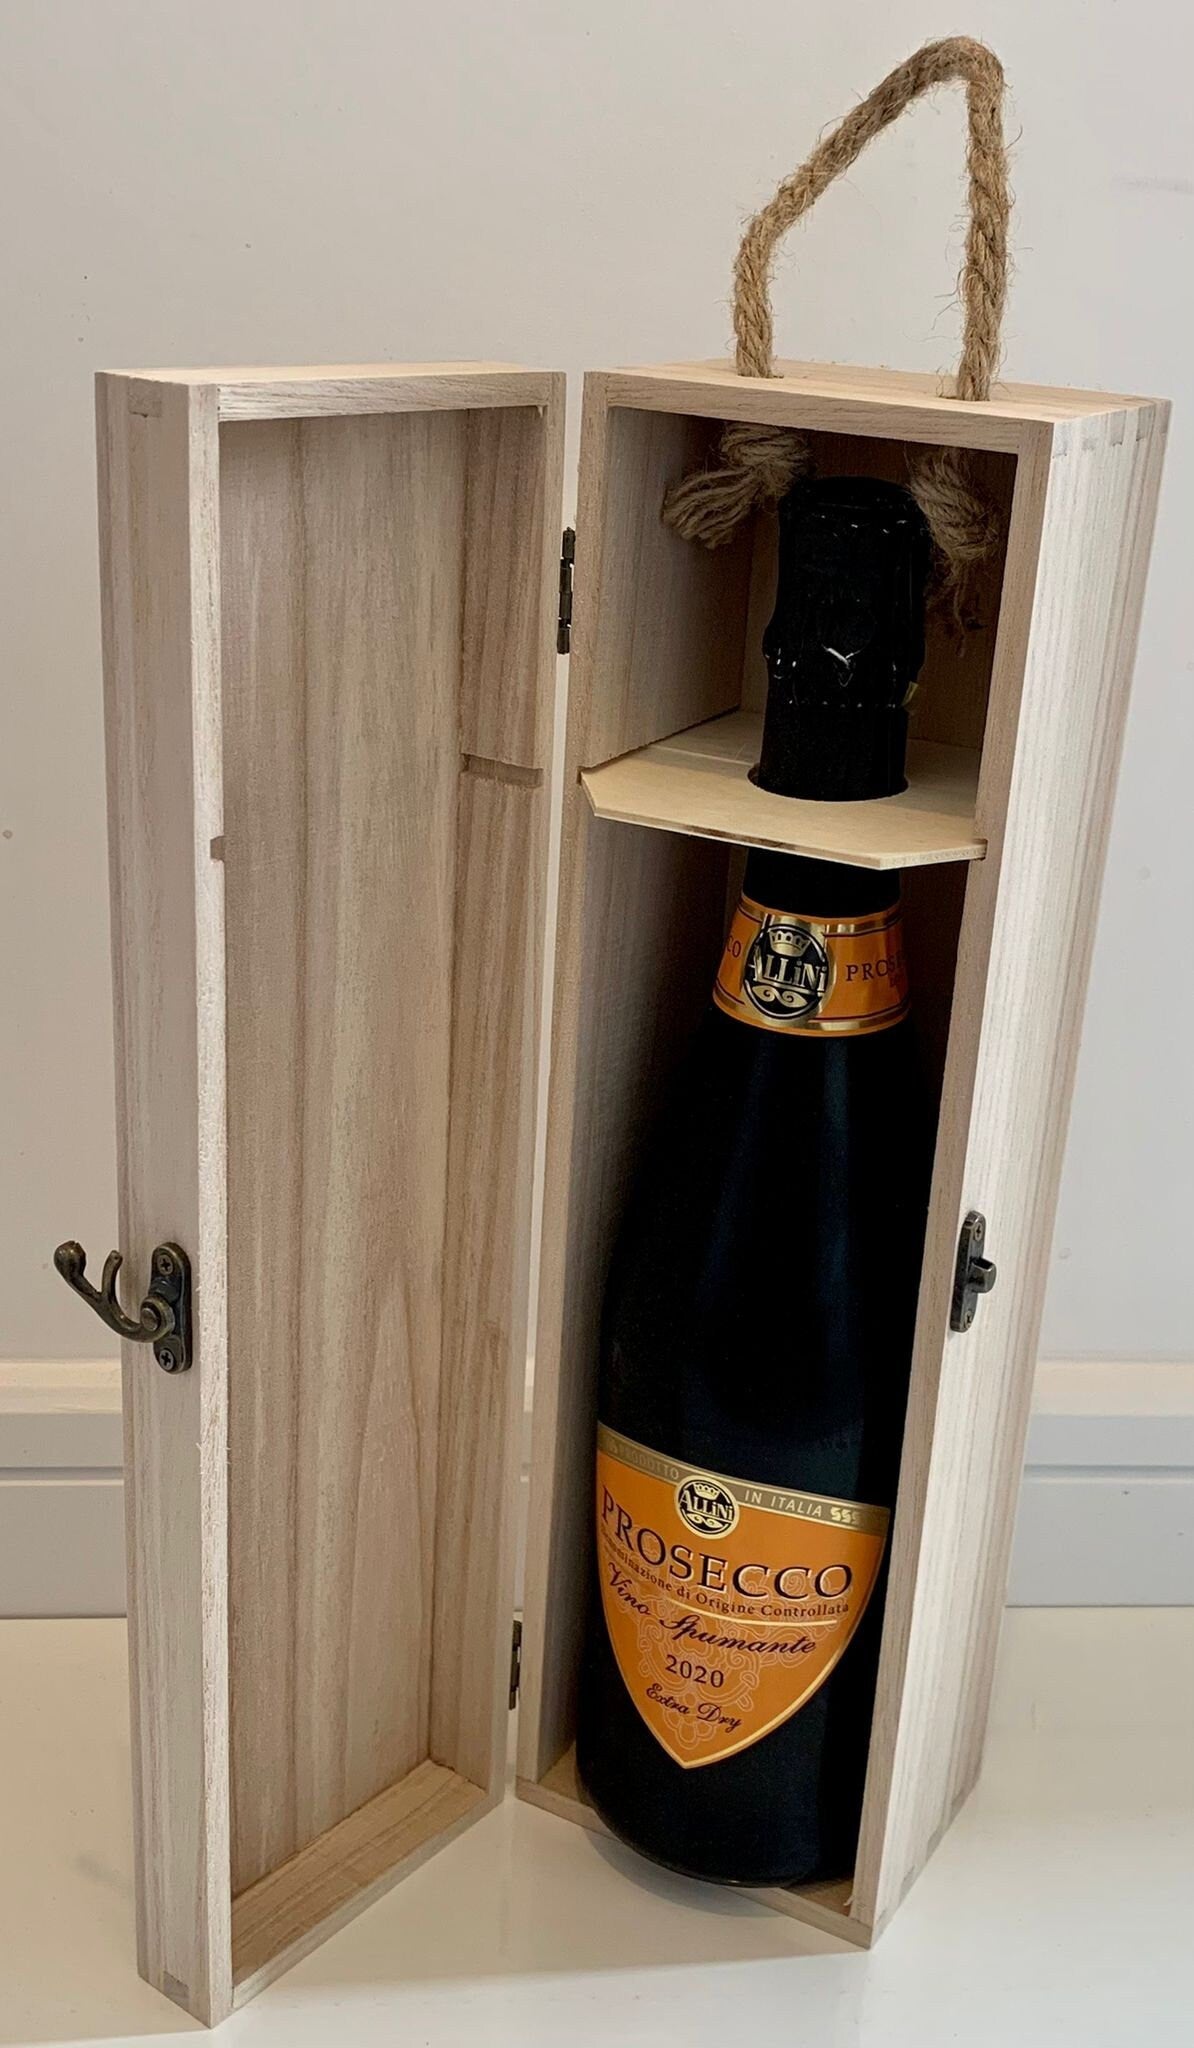 Personalised Engraved Wooden Wine Bottle Gift Box - Resplendent Aurora